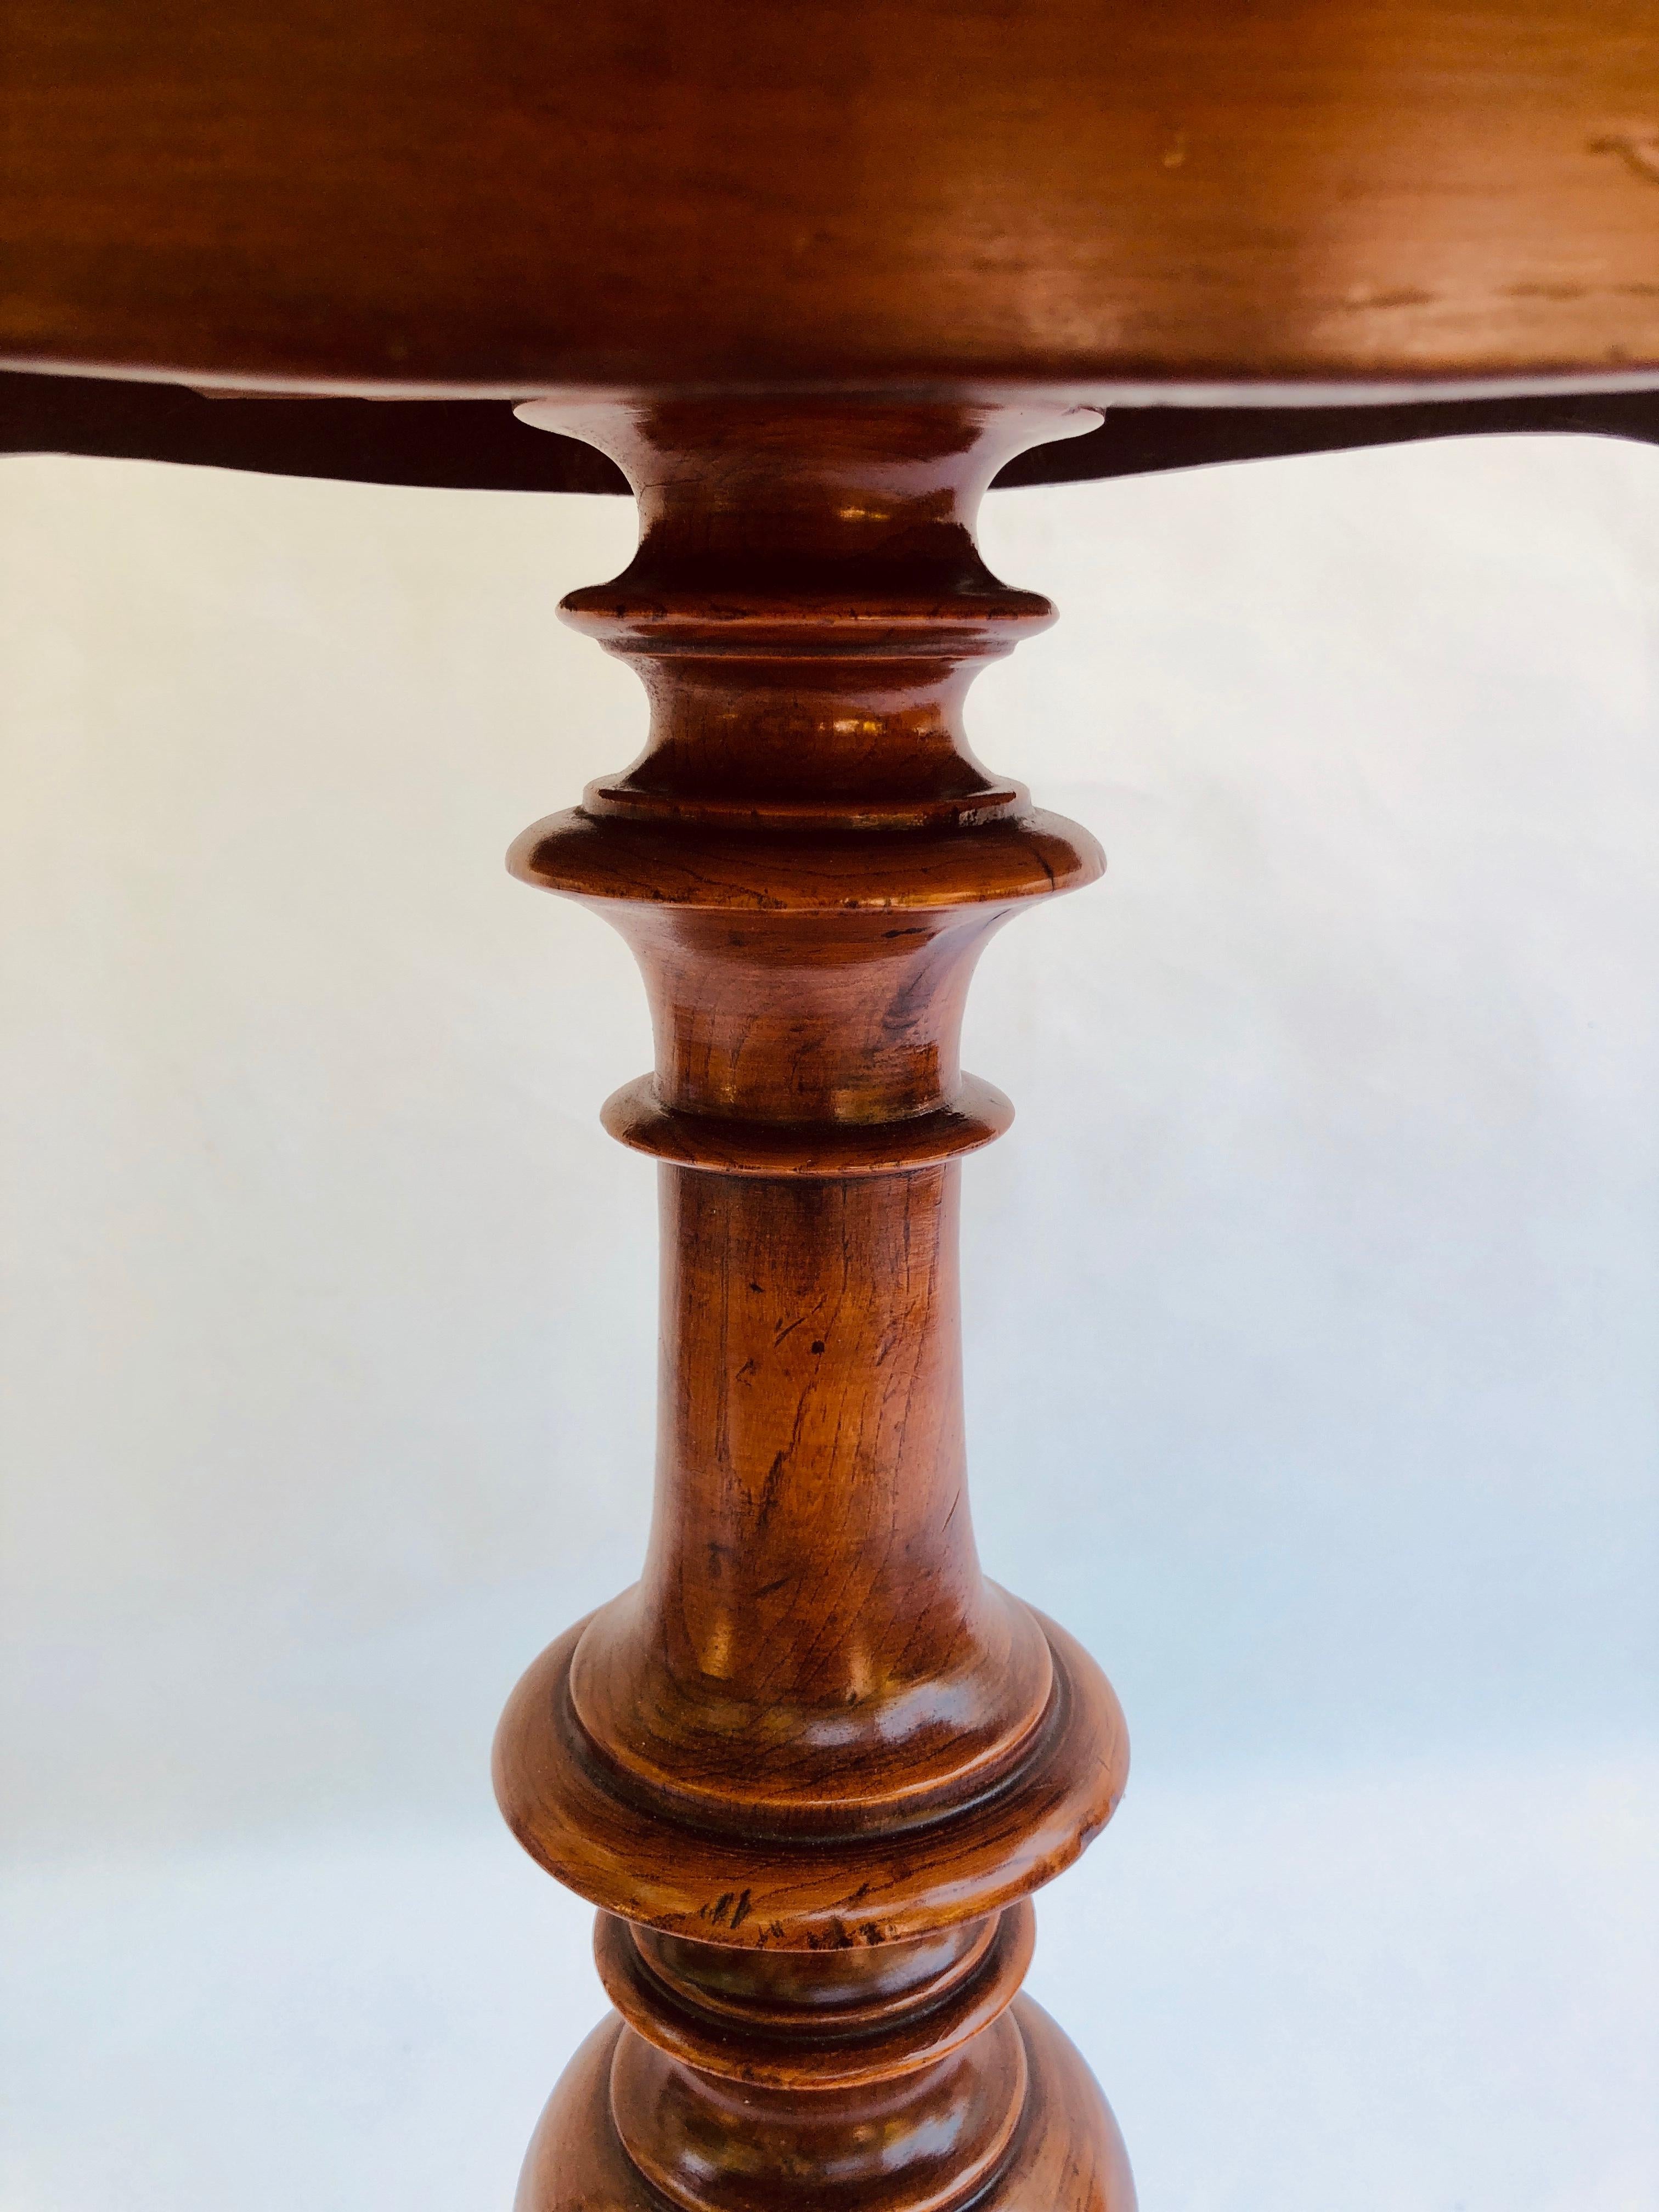 Table d'appoint/de lampe de qualité en acajou victorien du 19e siècle, avec un bord moulé en forme de pouce, reposant sur une jolie colonne tournée, sur d'élégants pieds cabriole.

Une pièce impressionnante aux couleurs magnifiques.

LIVRAISON DANS